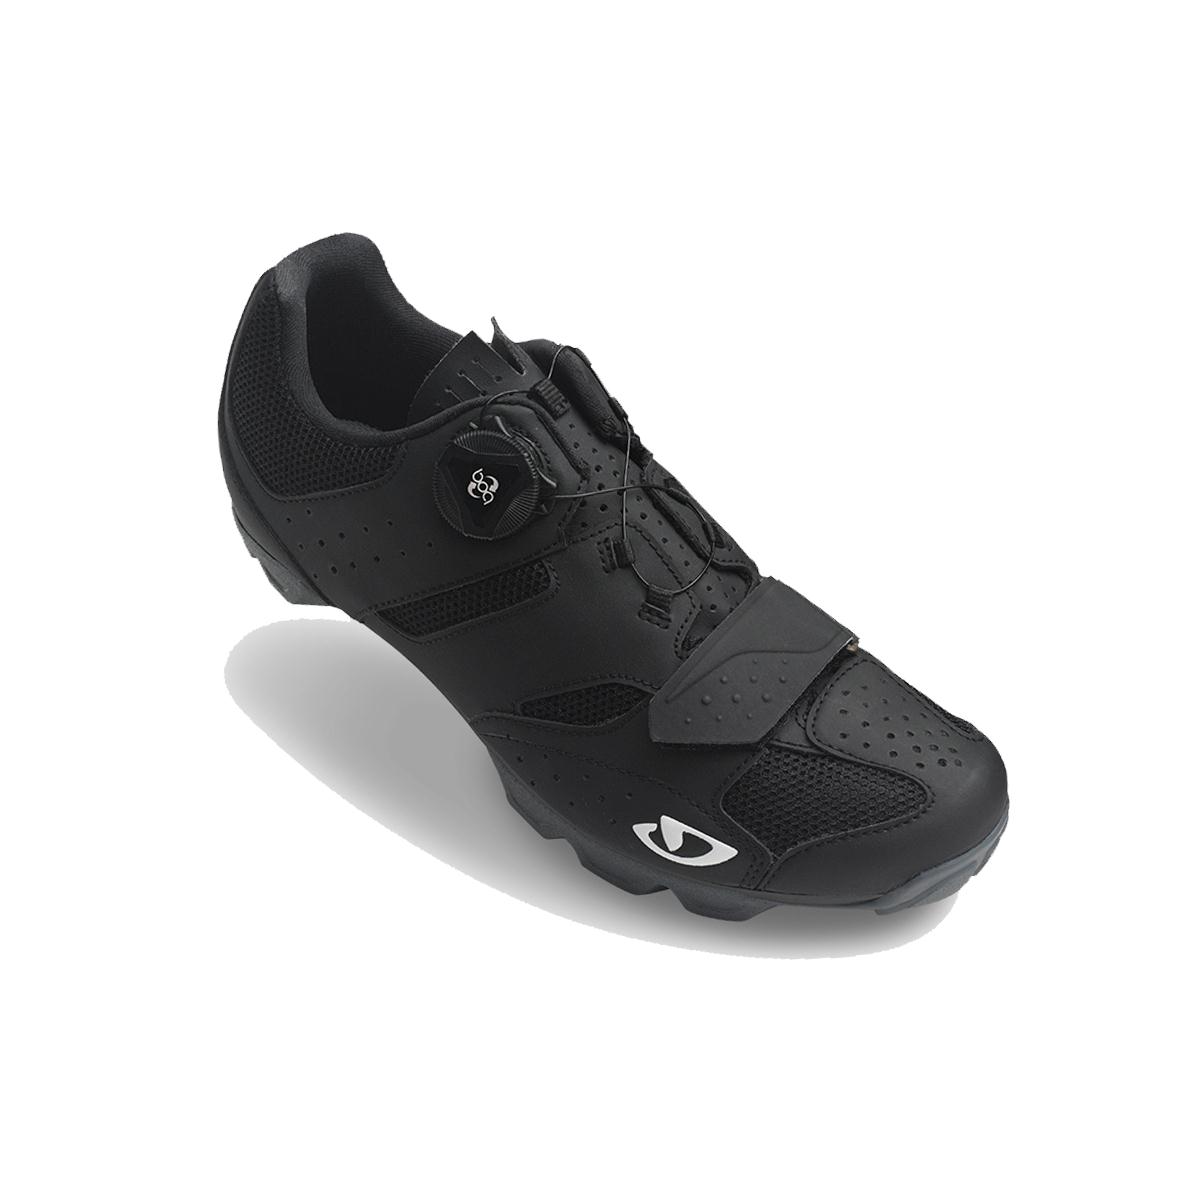 GIRO Cylinder MTB Cycling Shoes 2018 Black 44